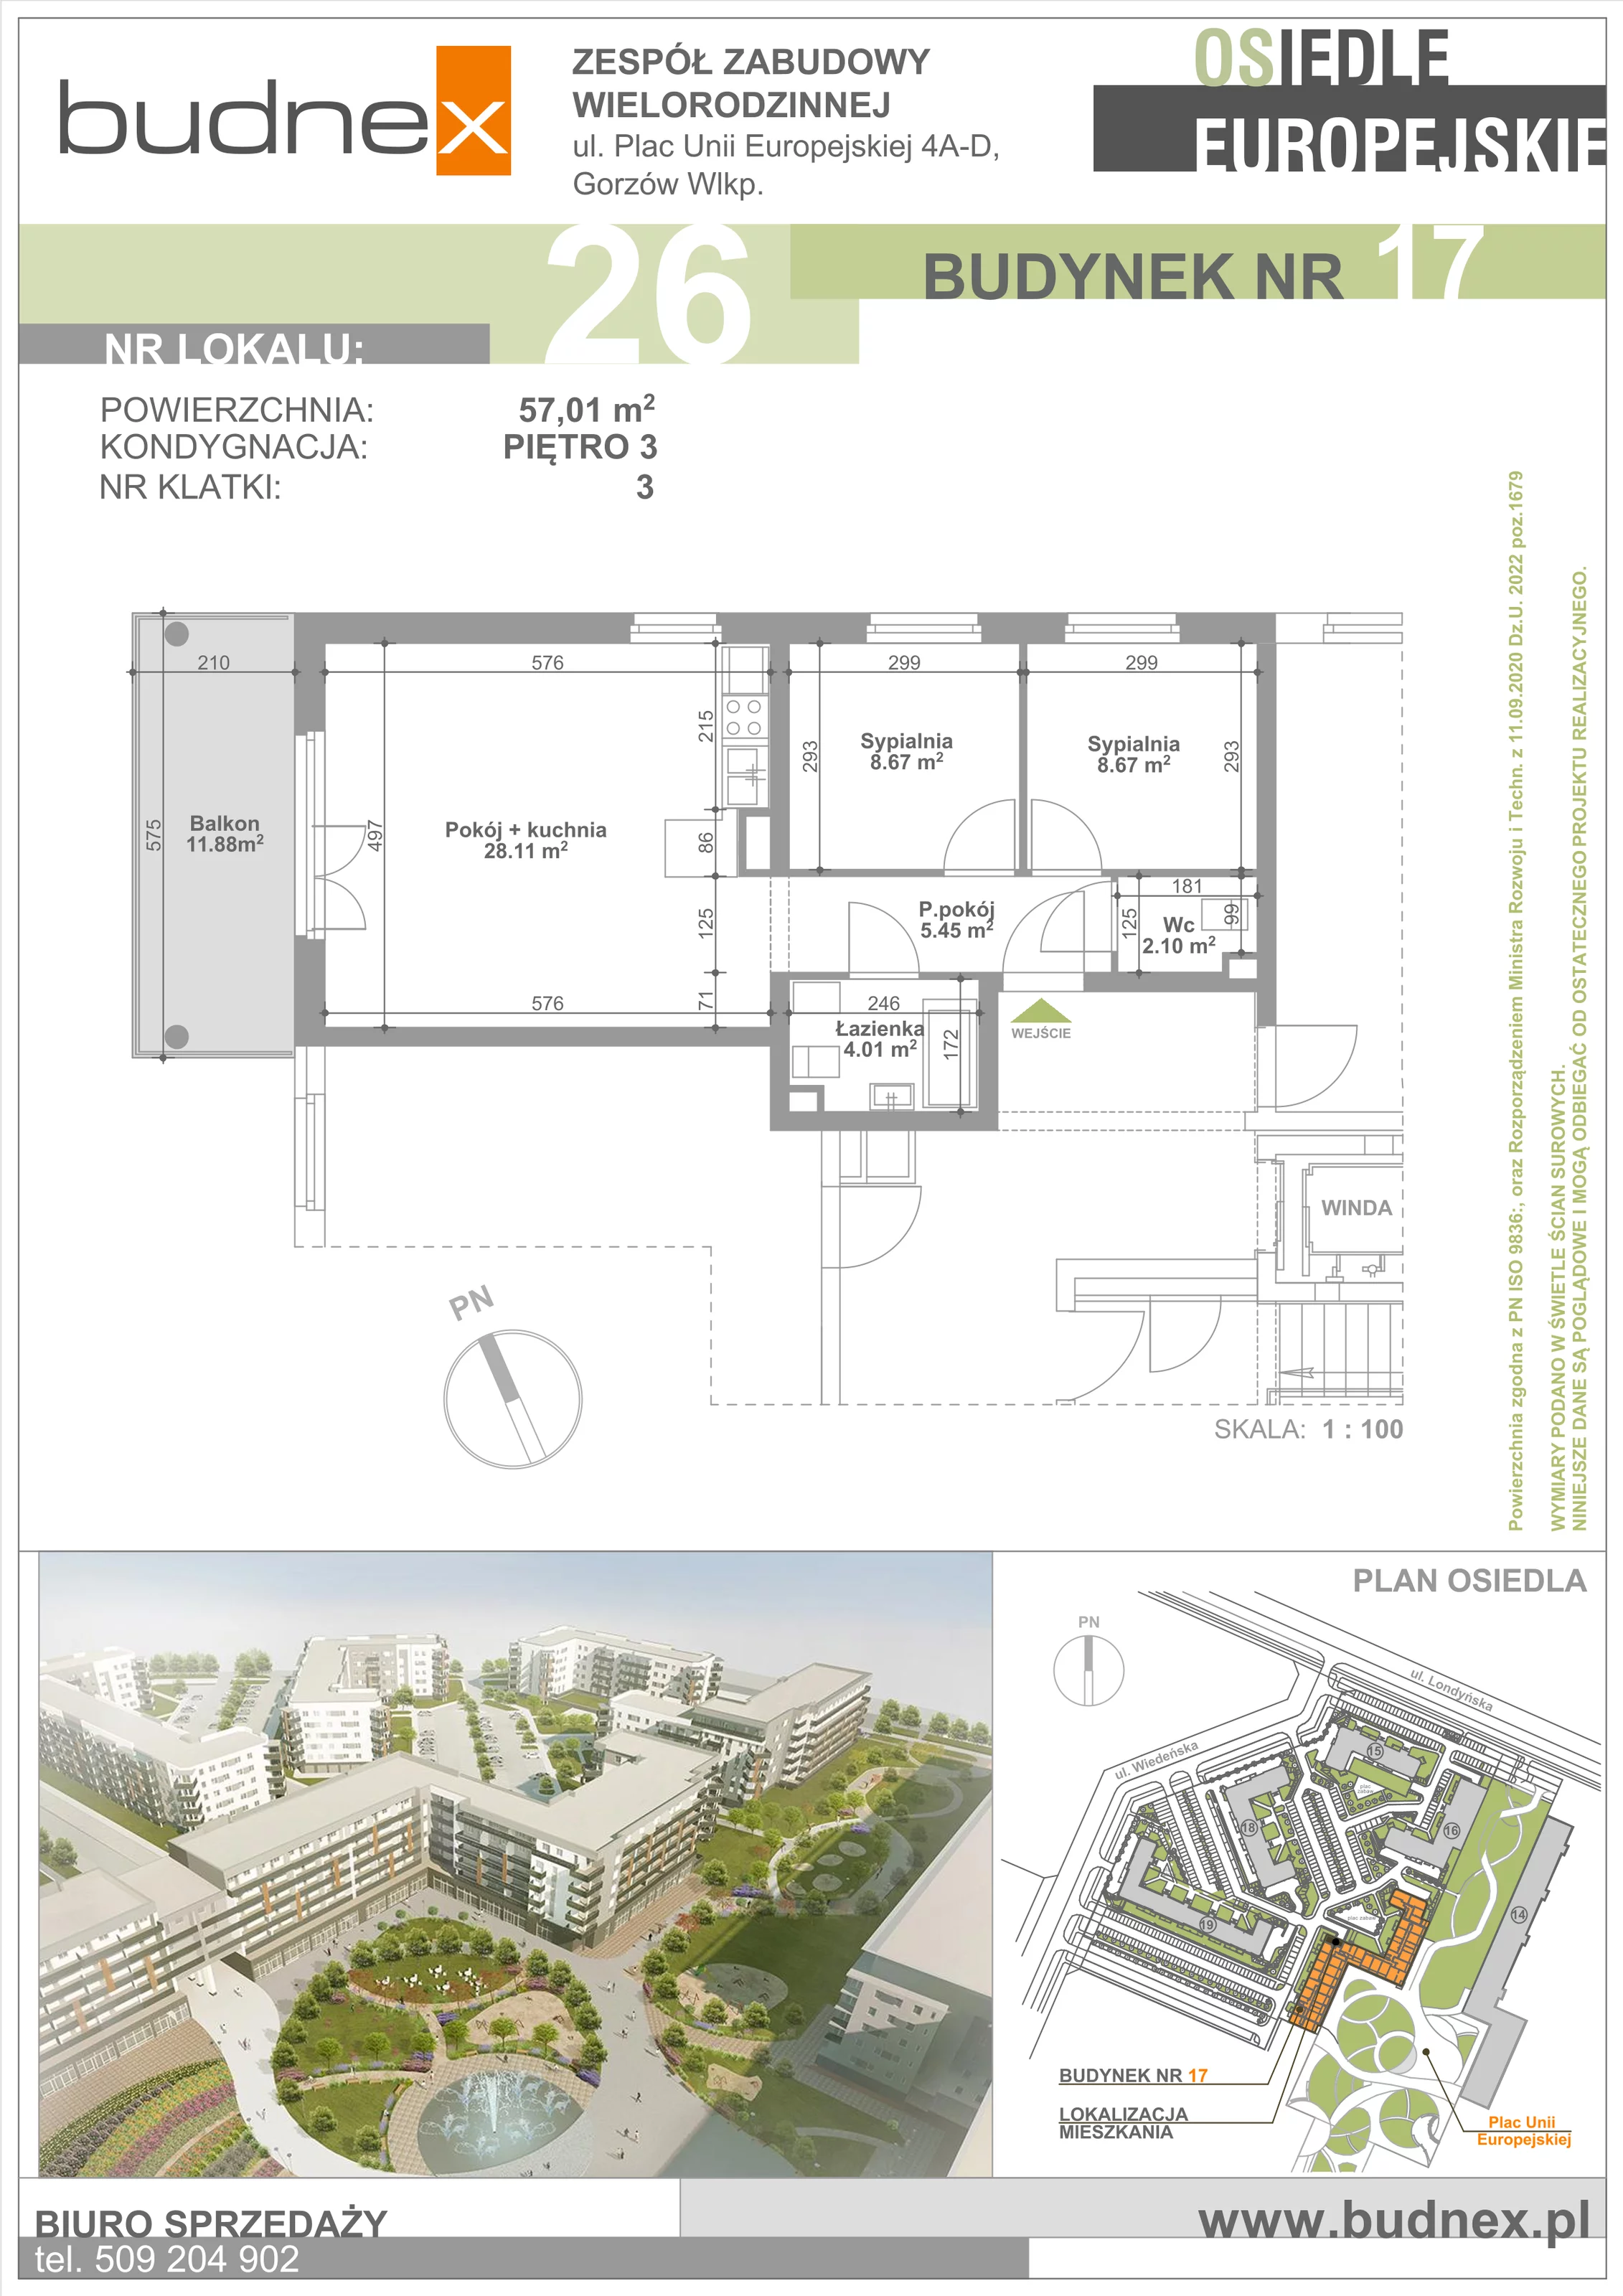 Mieszkanie 57,01 m², piętro 3, oferta nr 3/M26, Osiedle Europejskie - Budynek 17, Gorzów Wielkopolski, Plac Unii Europejskiej 4A-D